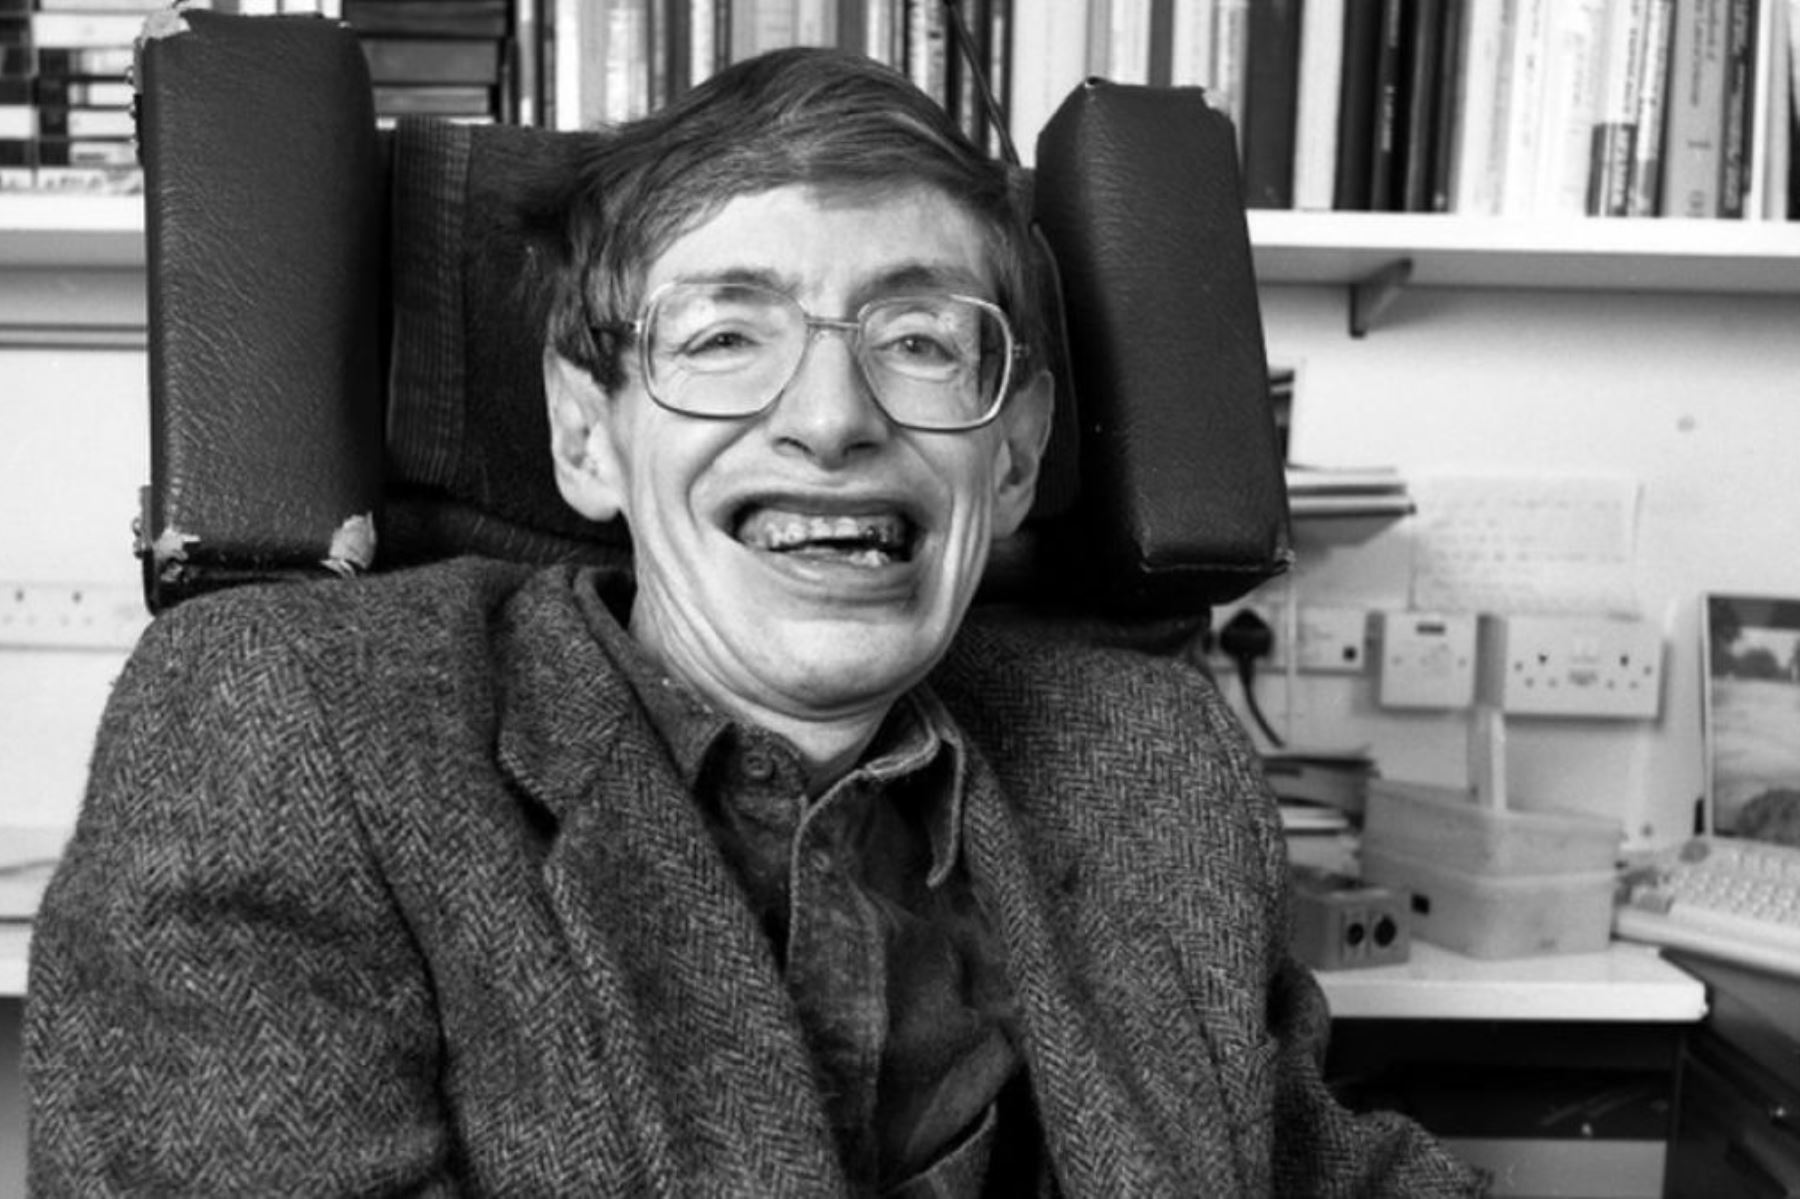 Stephen Hawking ingresó en 1977 en el Departamento de Matemáticas Aplicadas y Física Teórica de Cambridge, donde fue nombrado profesor de Física Gravitacional